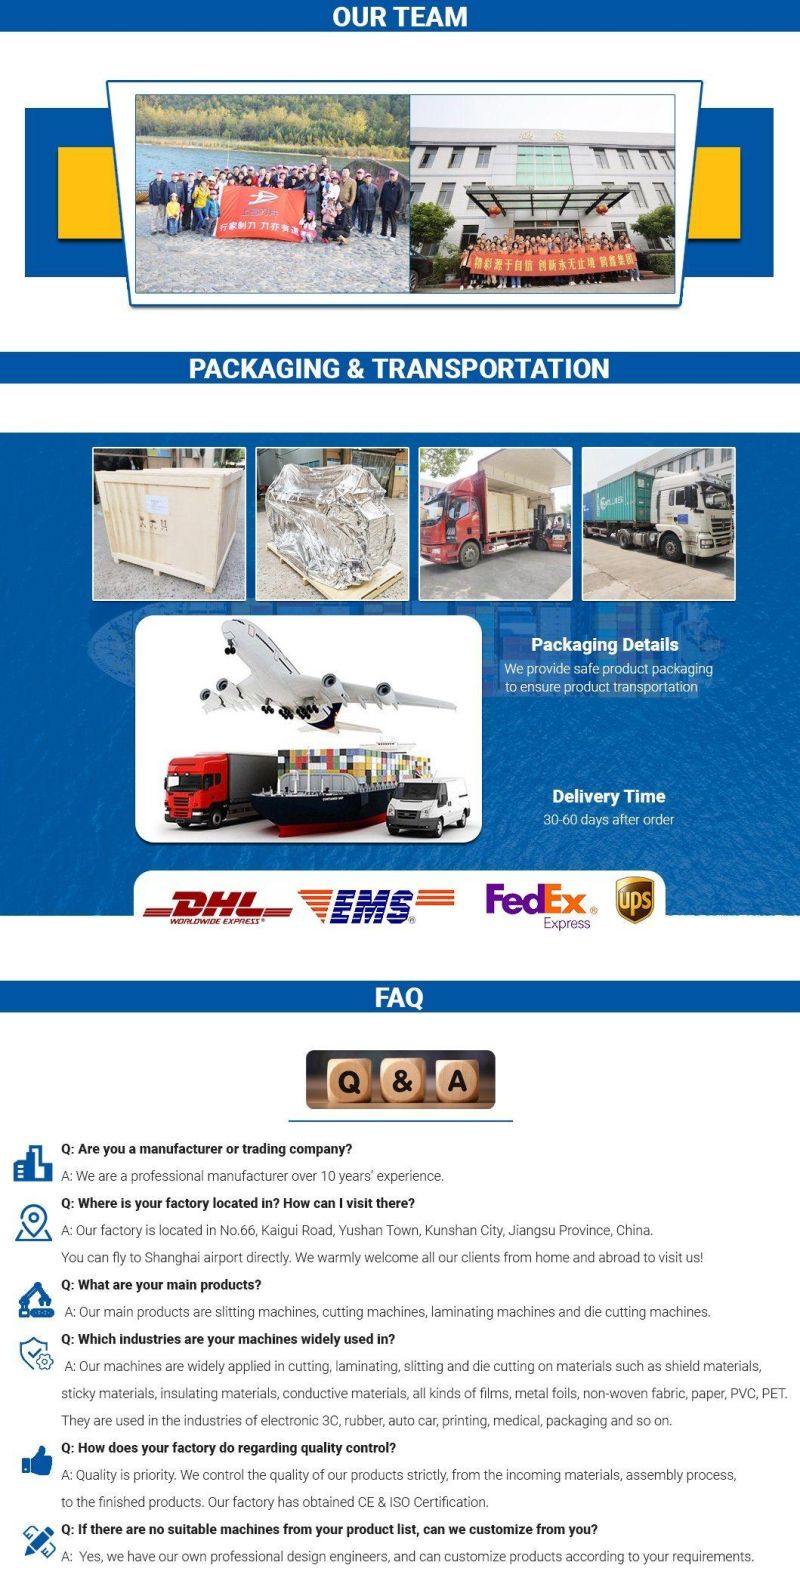 Hexin Electric Foam Laminator and Cutter Automatic Laminating Cutting Machine